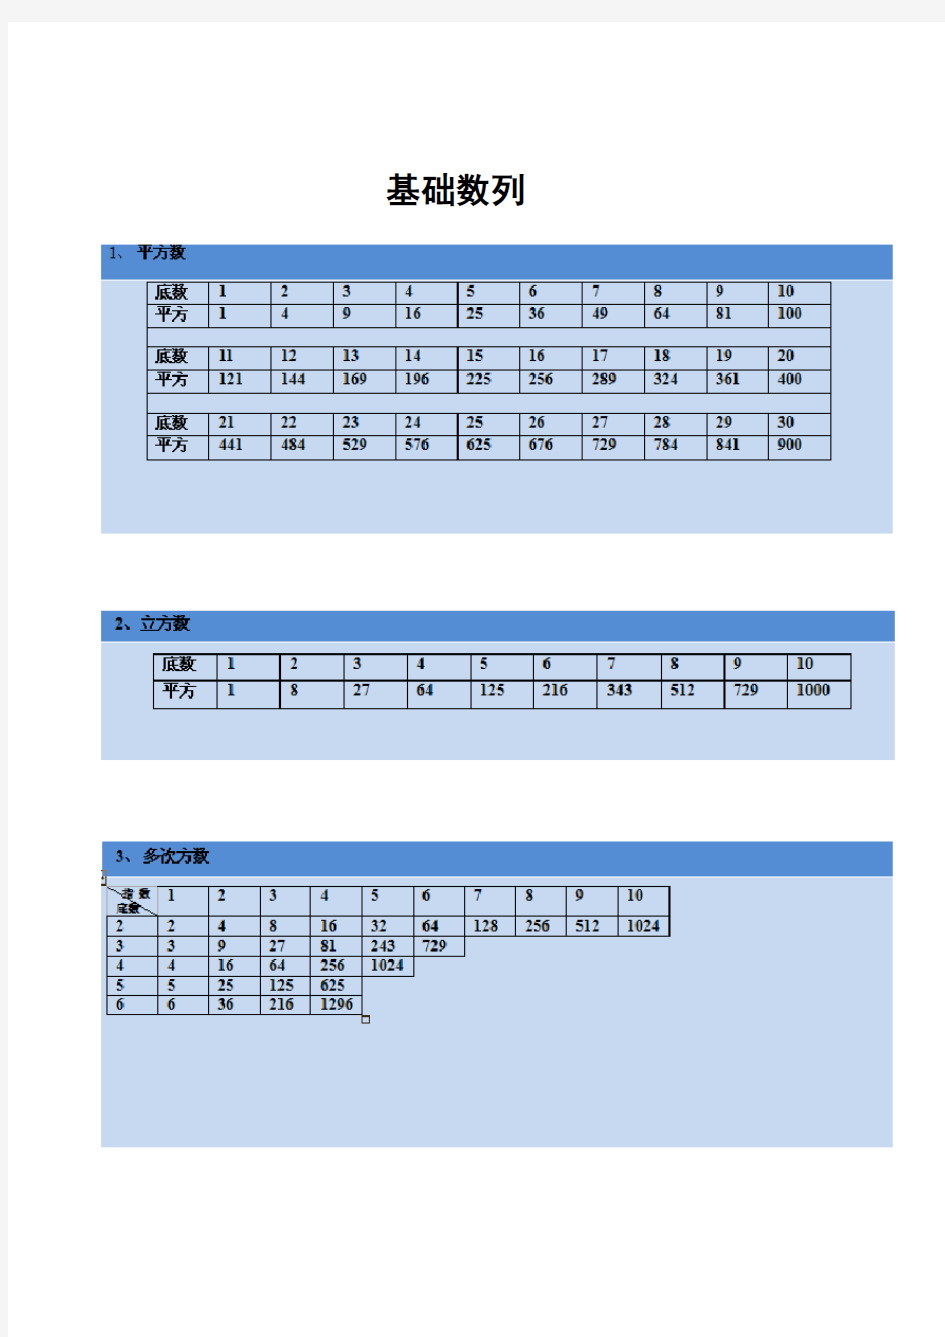 公务员考试数字推理基础知识各种特殊数字集(最全)